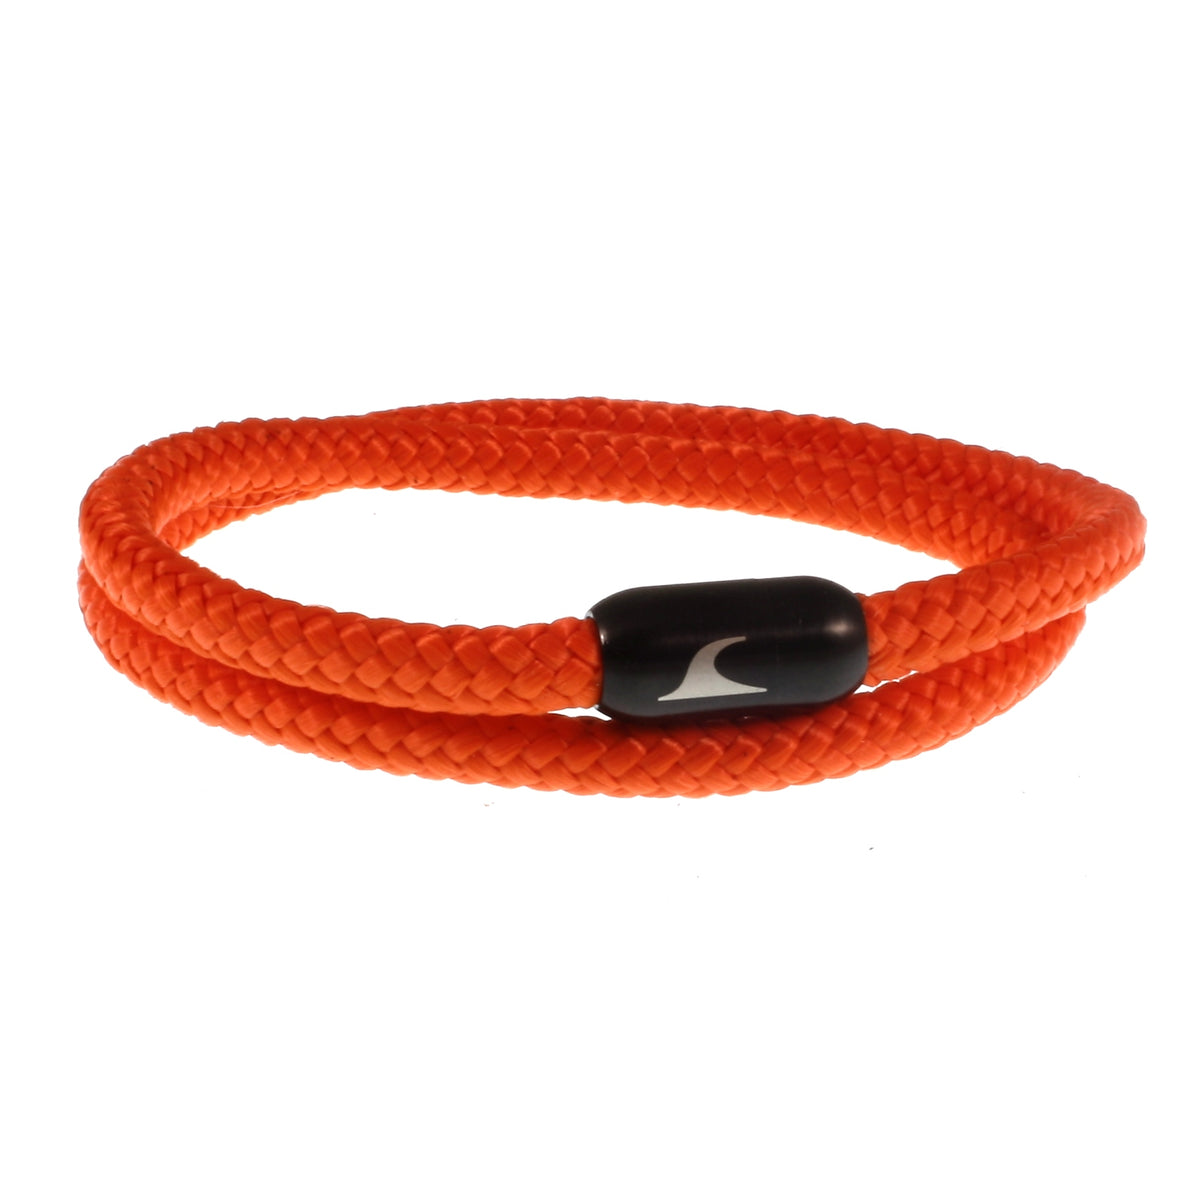 Herren-Segeltau-Armband-damen-hawaii-orange-schwarz-Edelstahlverschluss-vorn-wavepirate-shop-st